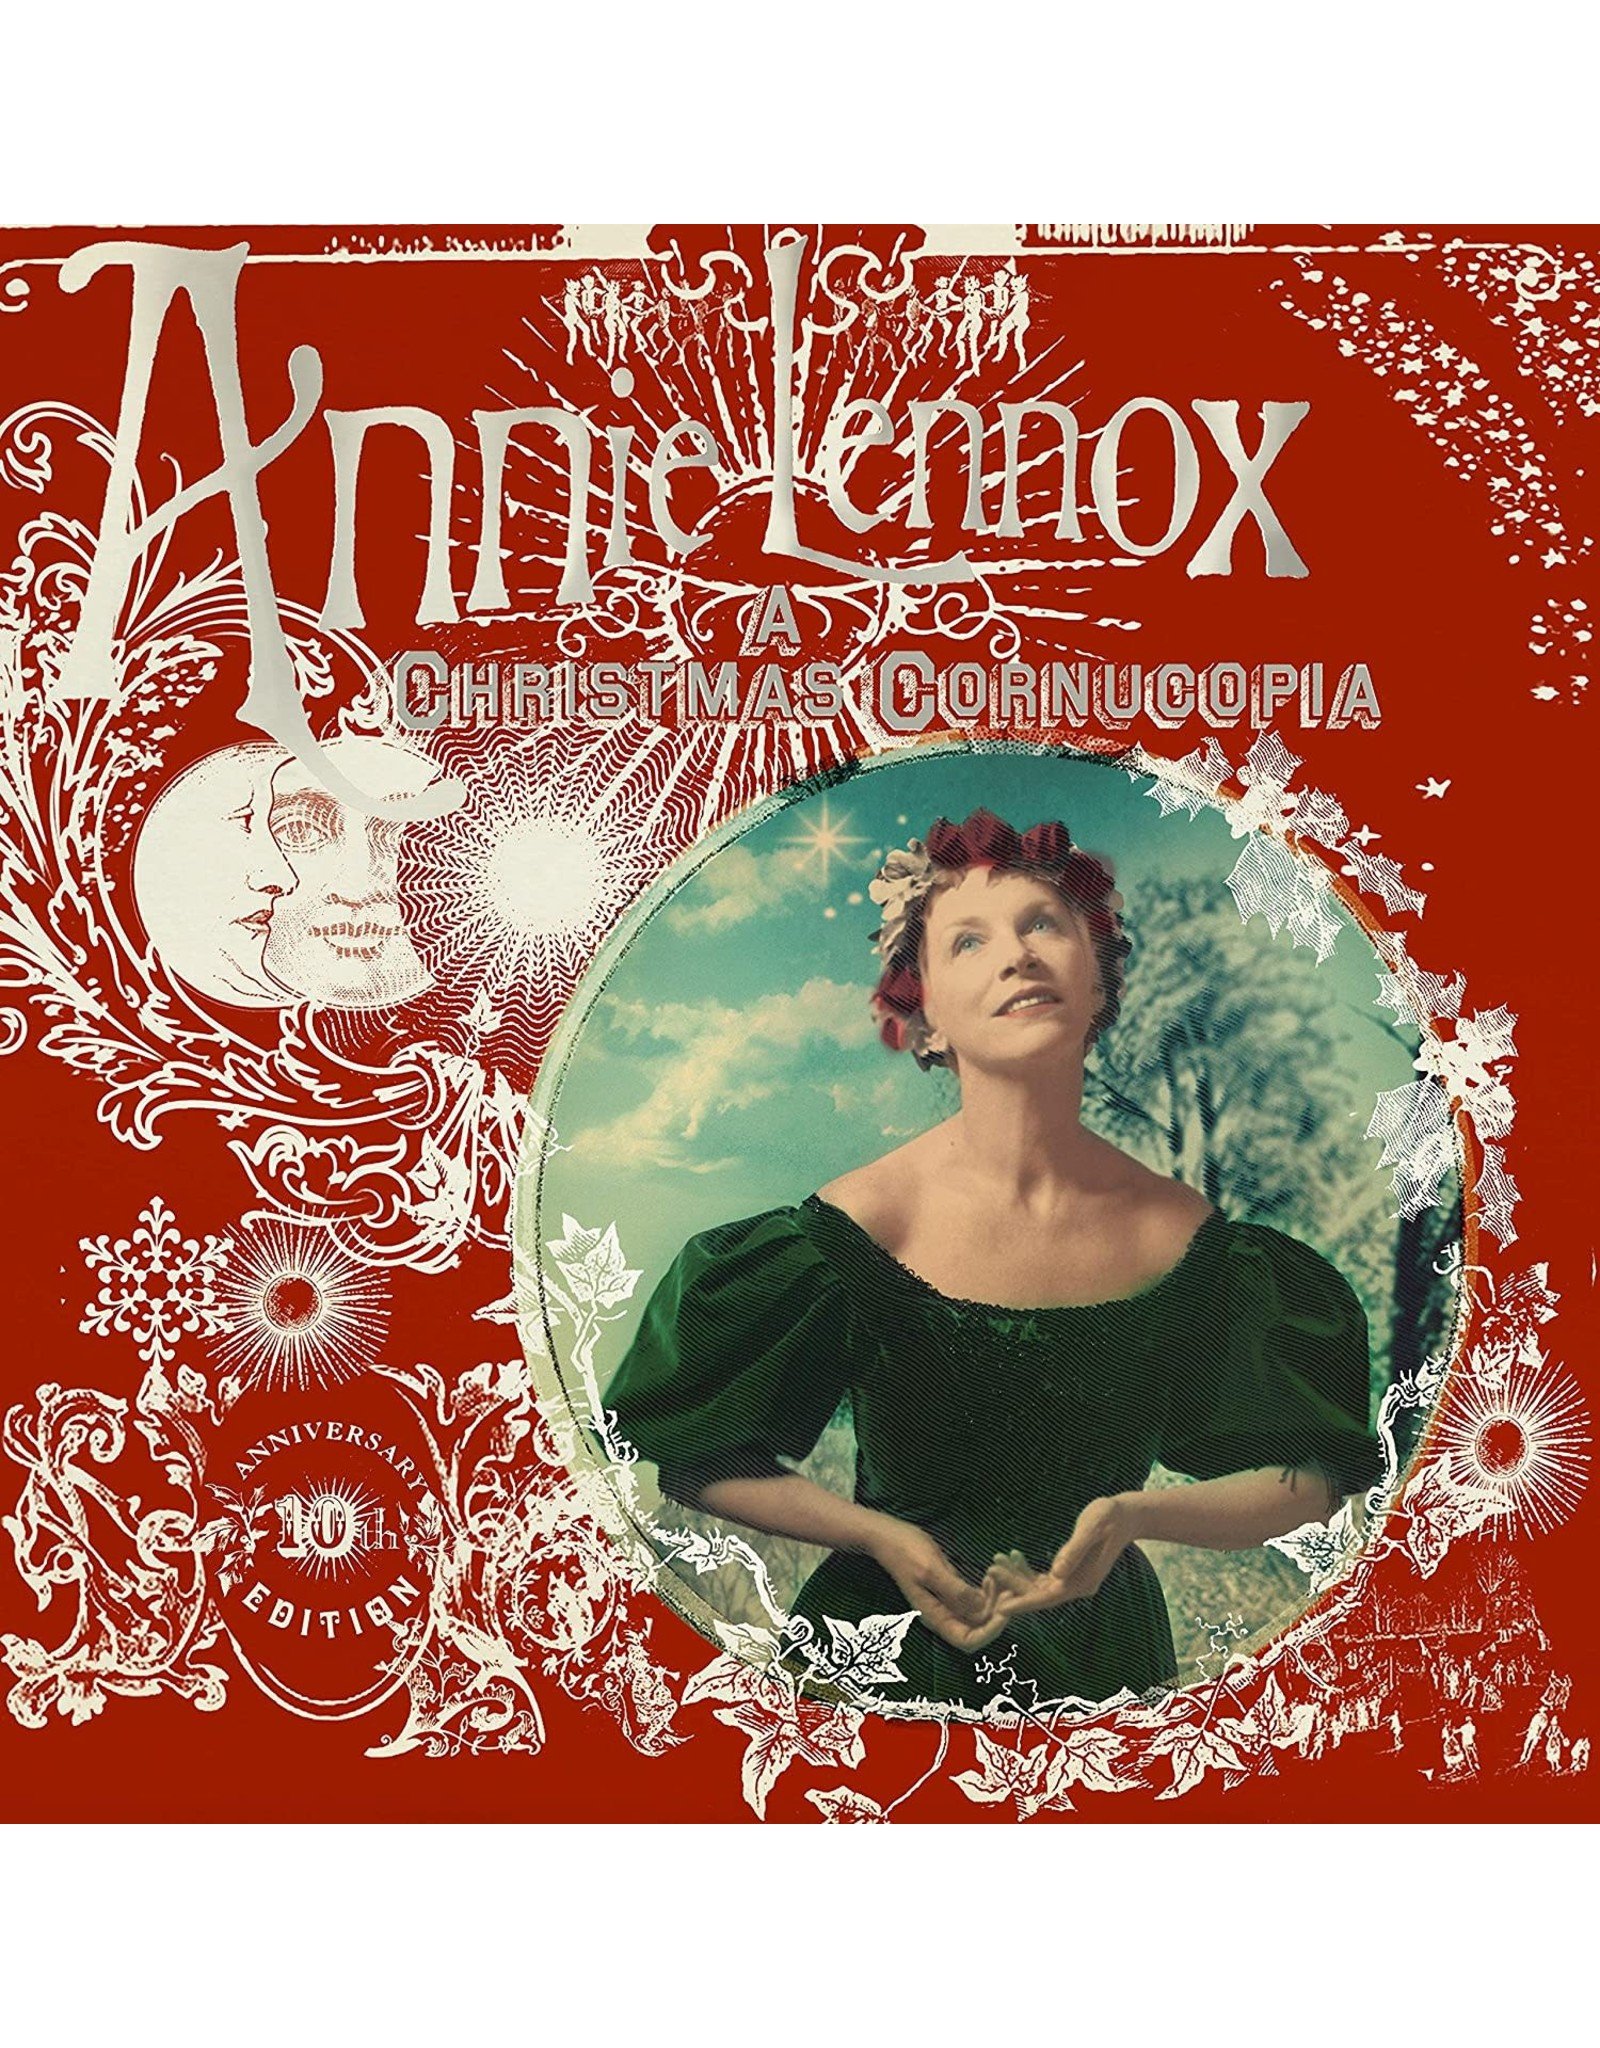 Annie Lennox - A Christmas Cornucopia (10th Anniversary)